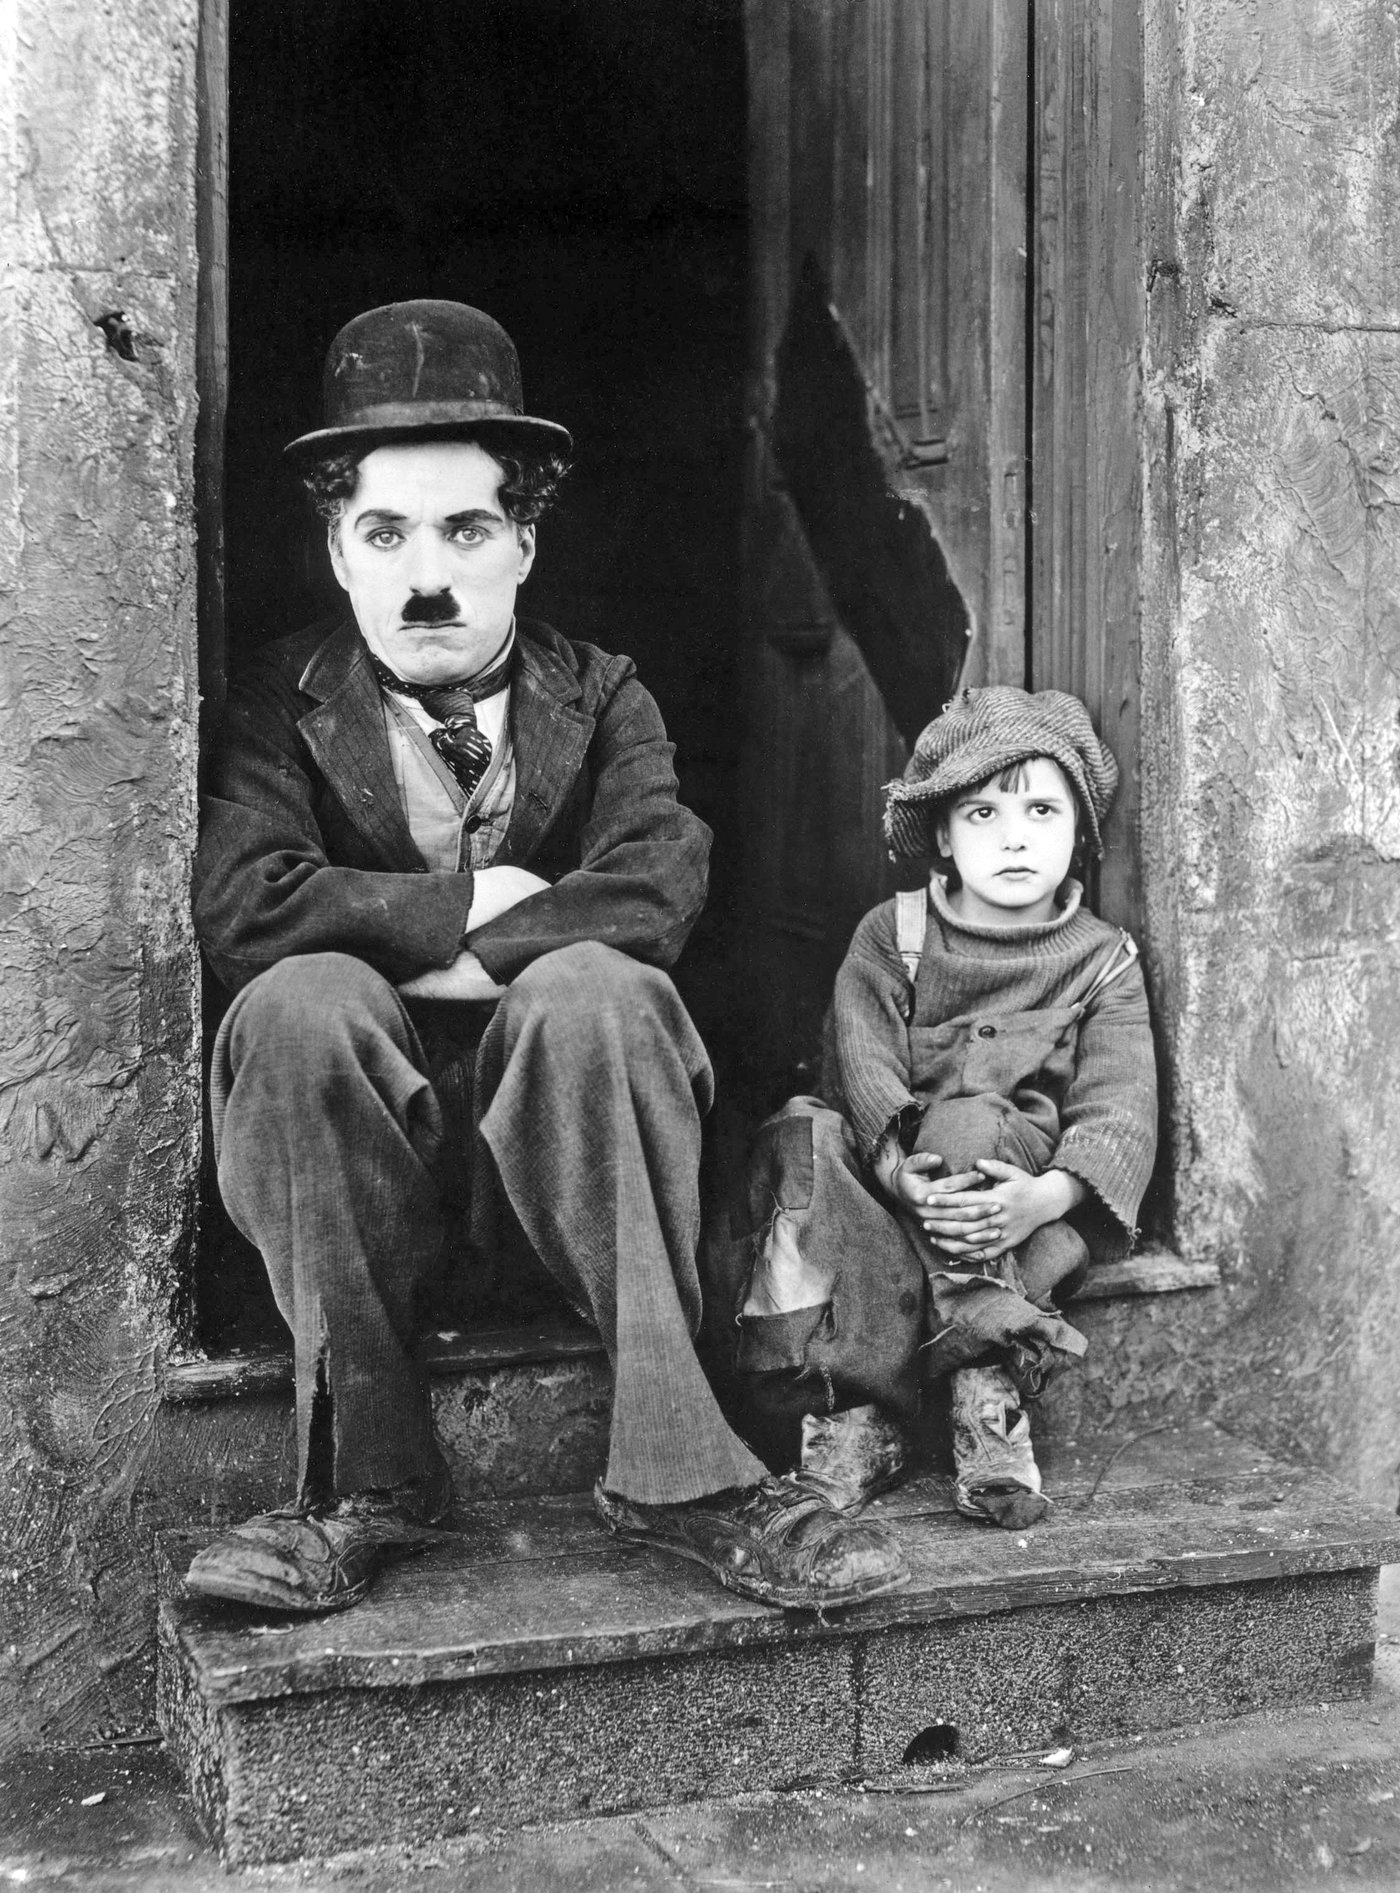 ბიჭუნა (ინგლ. The Kid) — ჩარლი ჩაპლინის 1921 წელს გამოსული კომედიურ-დრამატული მუნჯი ფილმი, რომლის რეჟისორი, სცენარისტი, პროდიუსერი და მთავარი როლის შემსრულებელია ჩარლი ჩაპლინი.